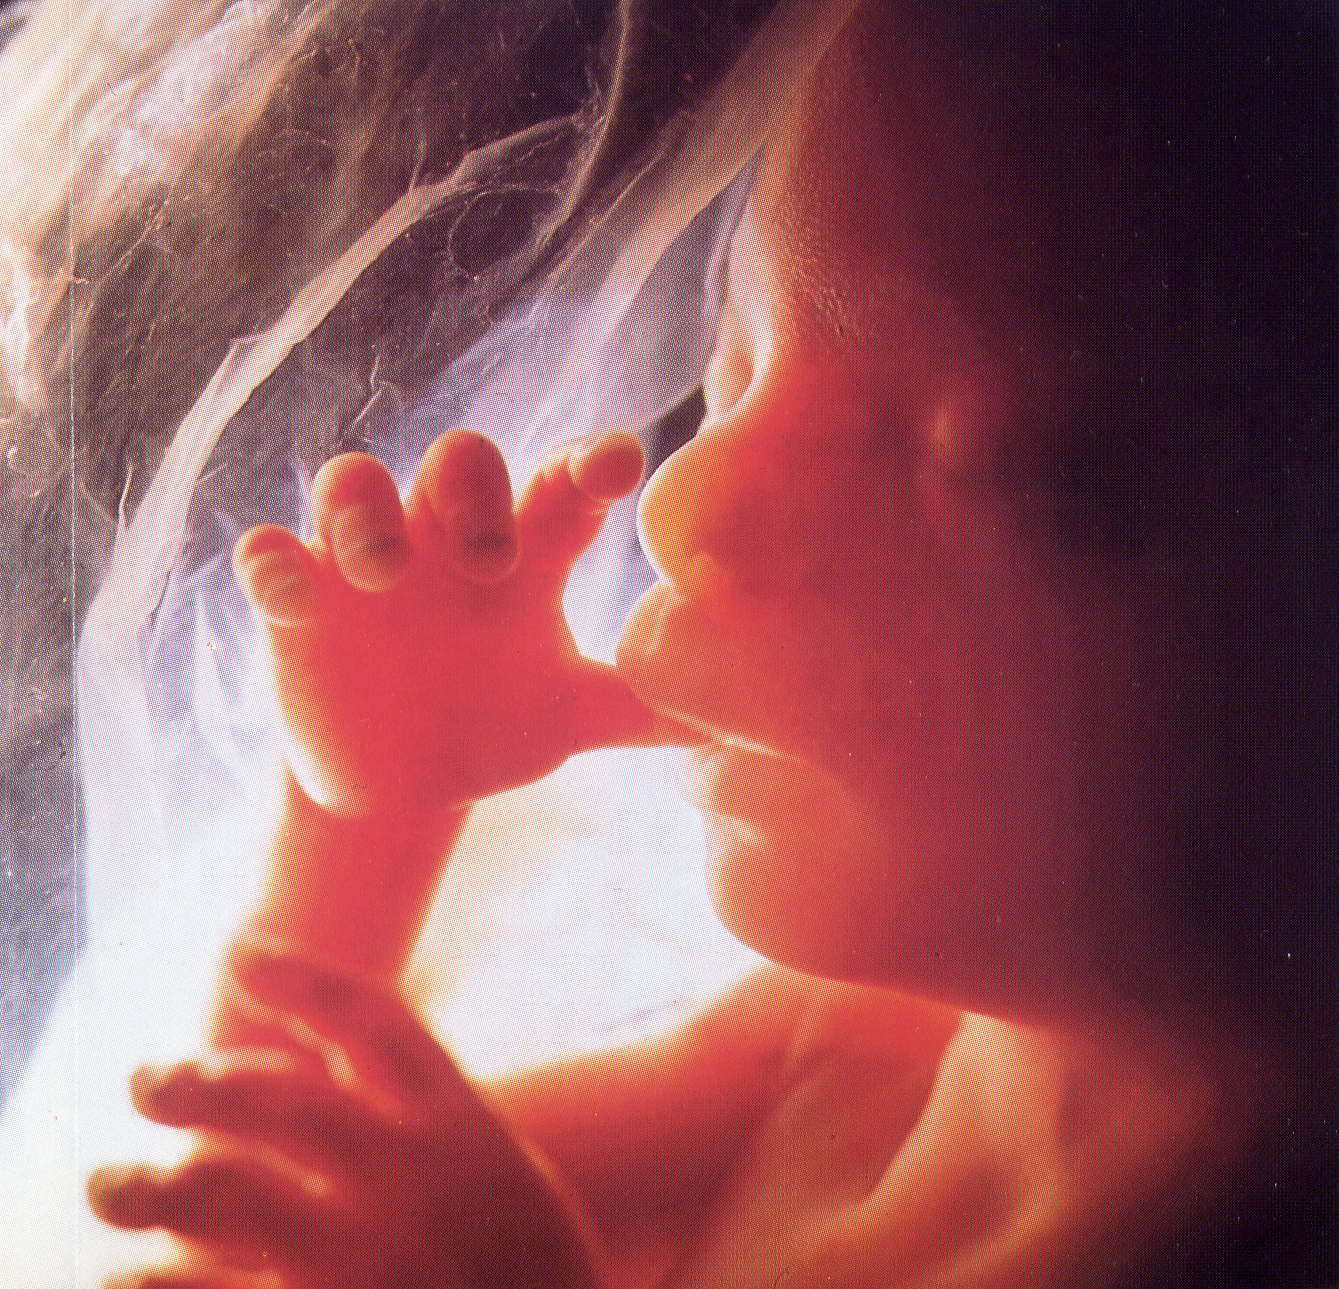 diagnosi prenatale feto